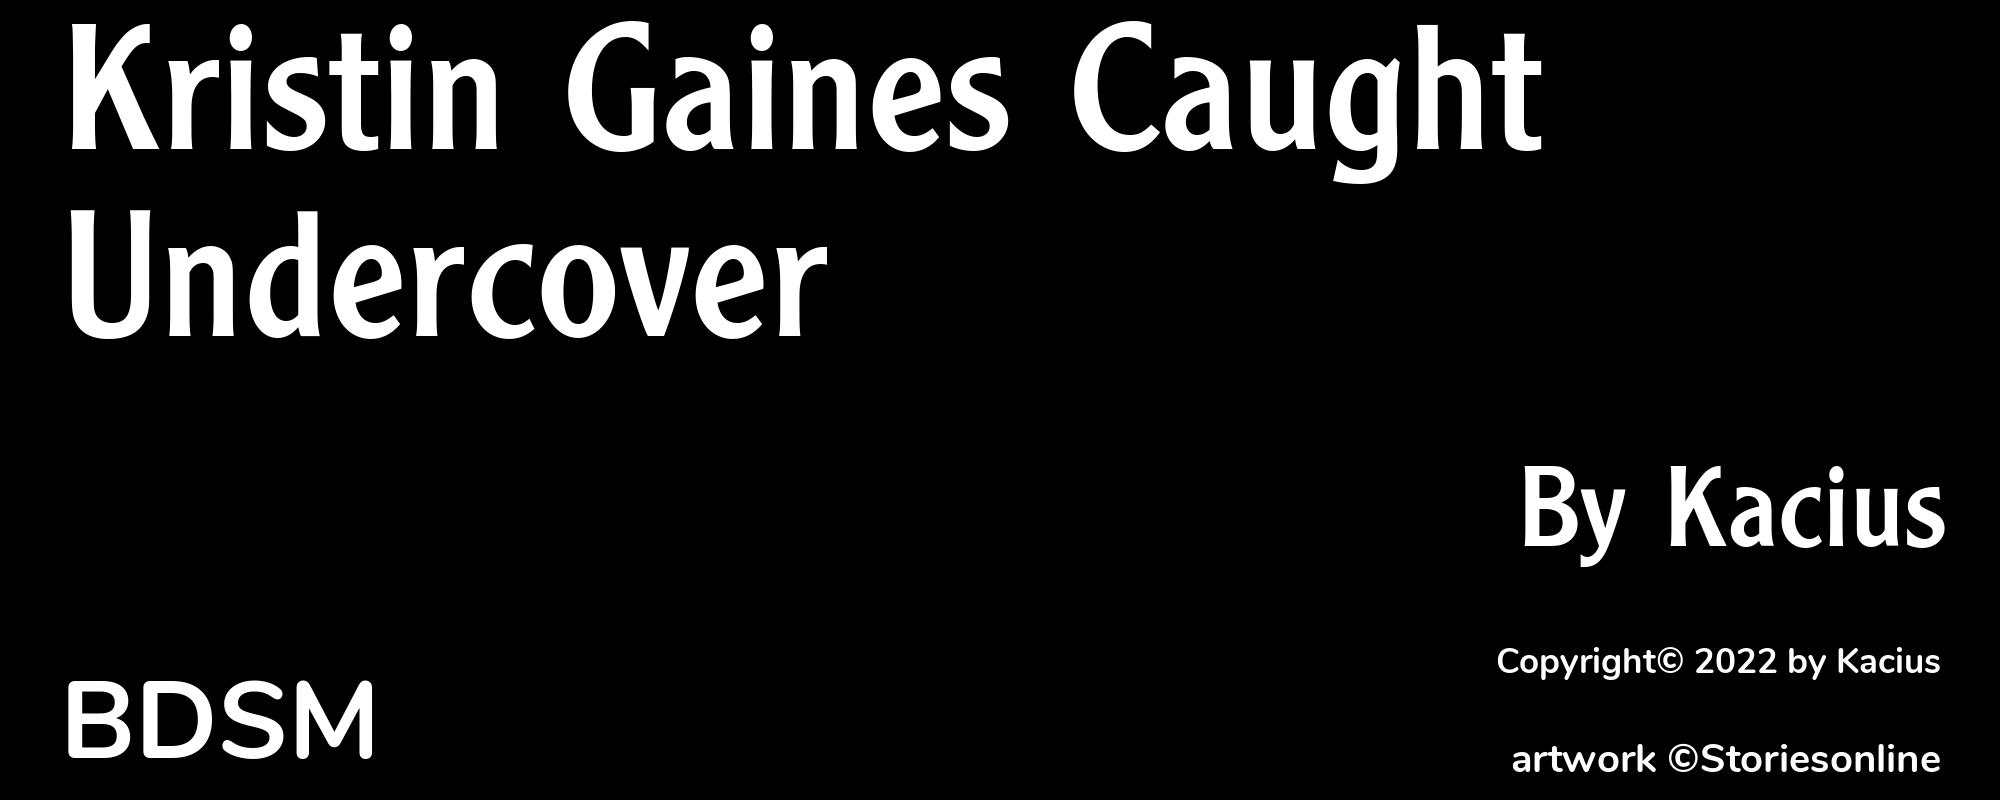 Kristin Gaines Caught Undercover - Cover